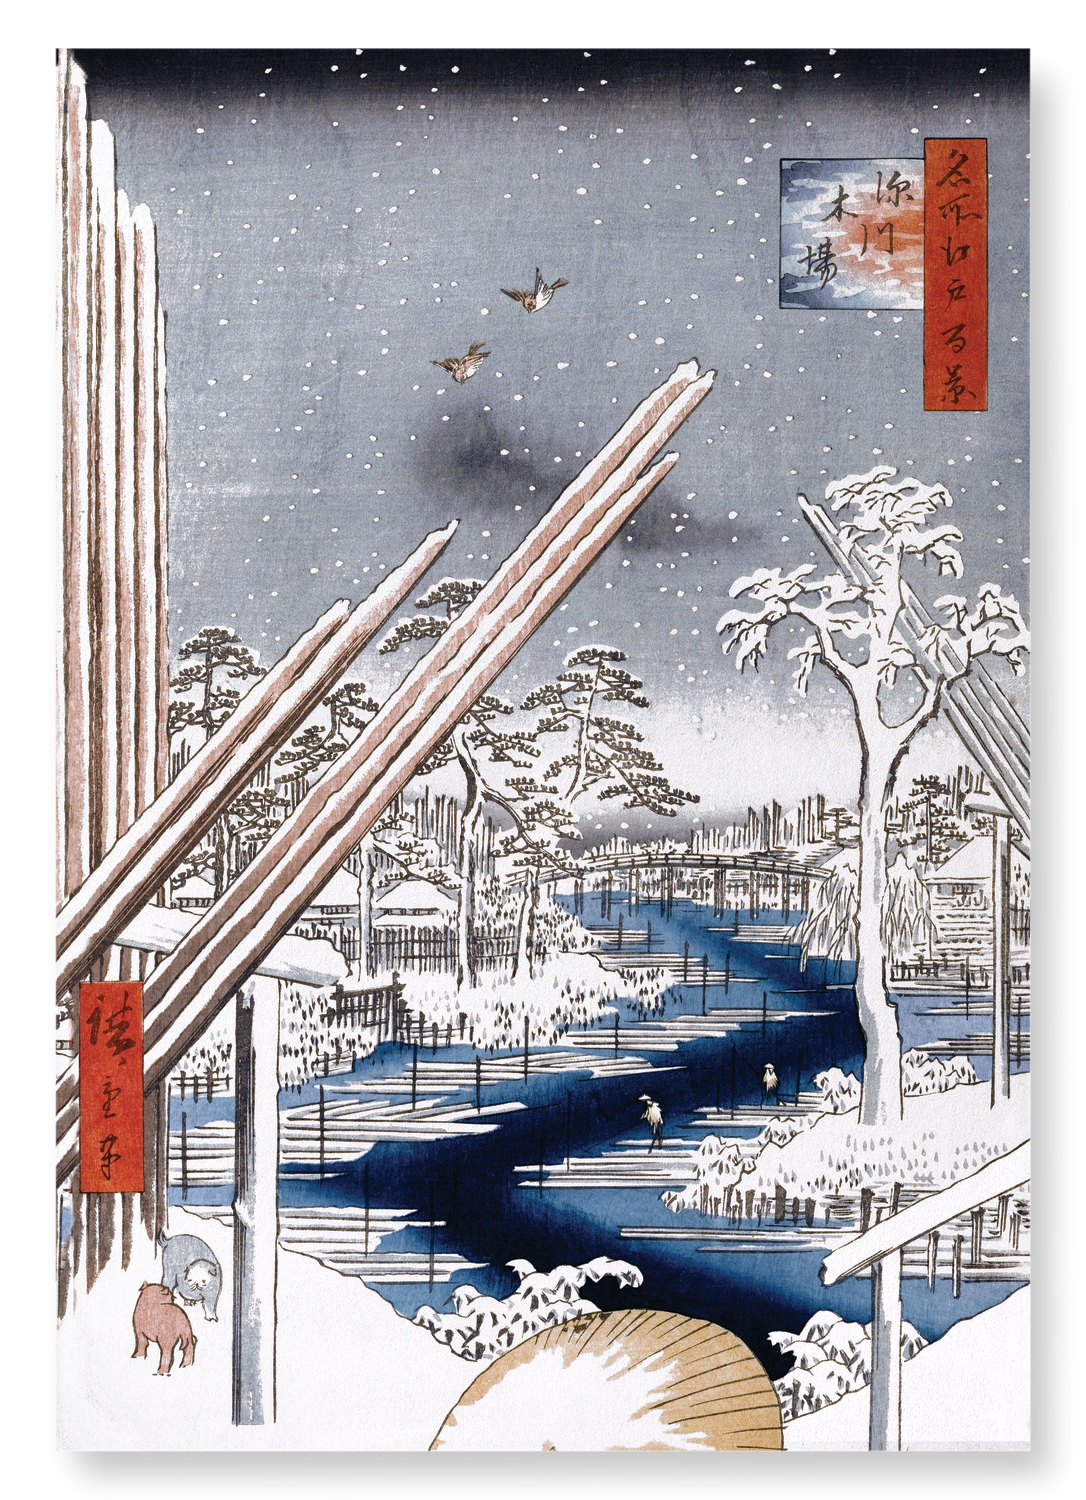 FUKAGAWA LUMBERYARDS (1856)